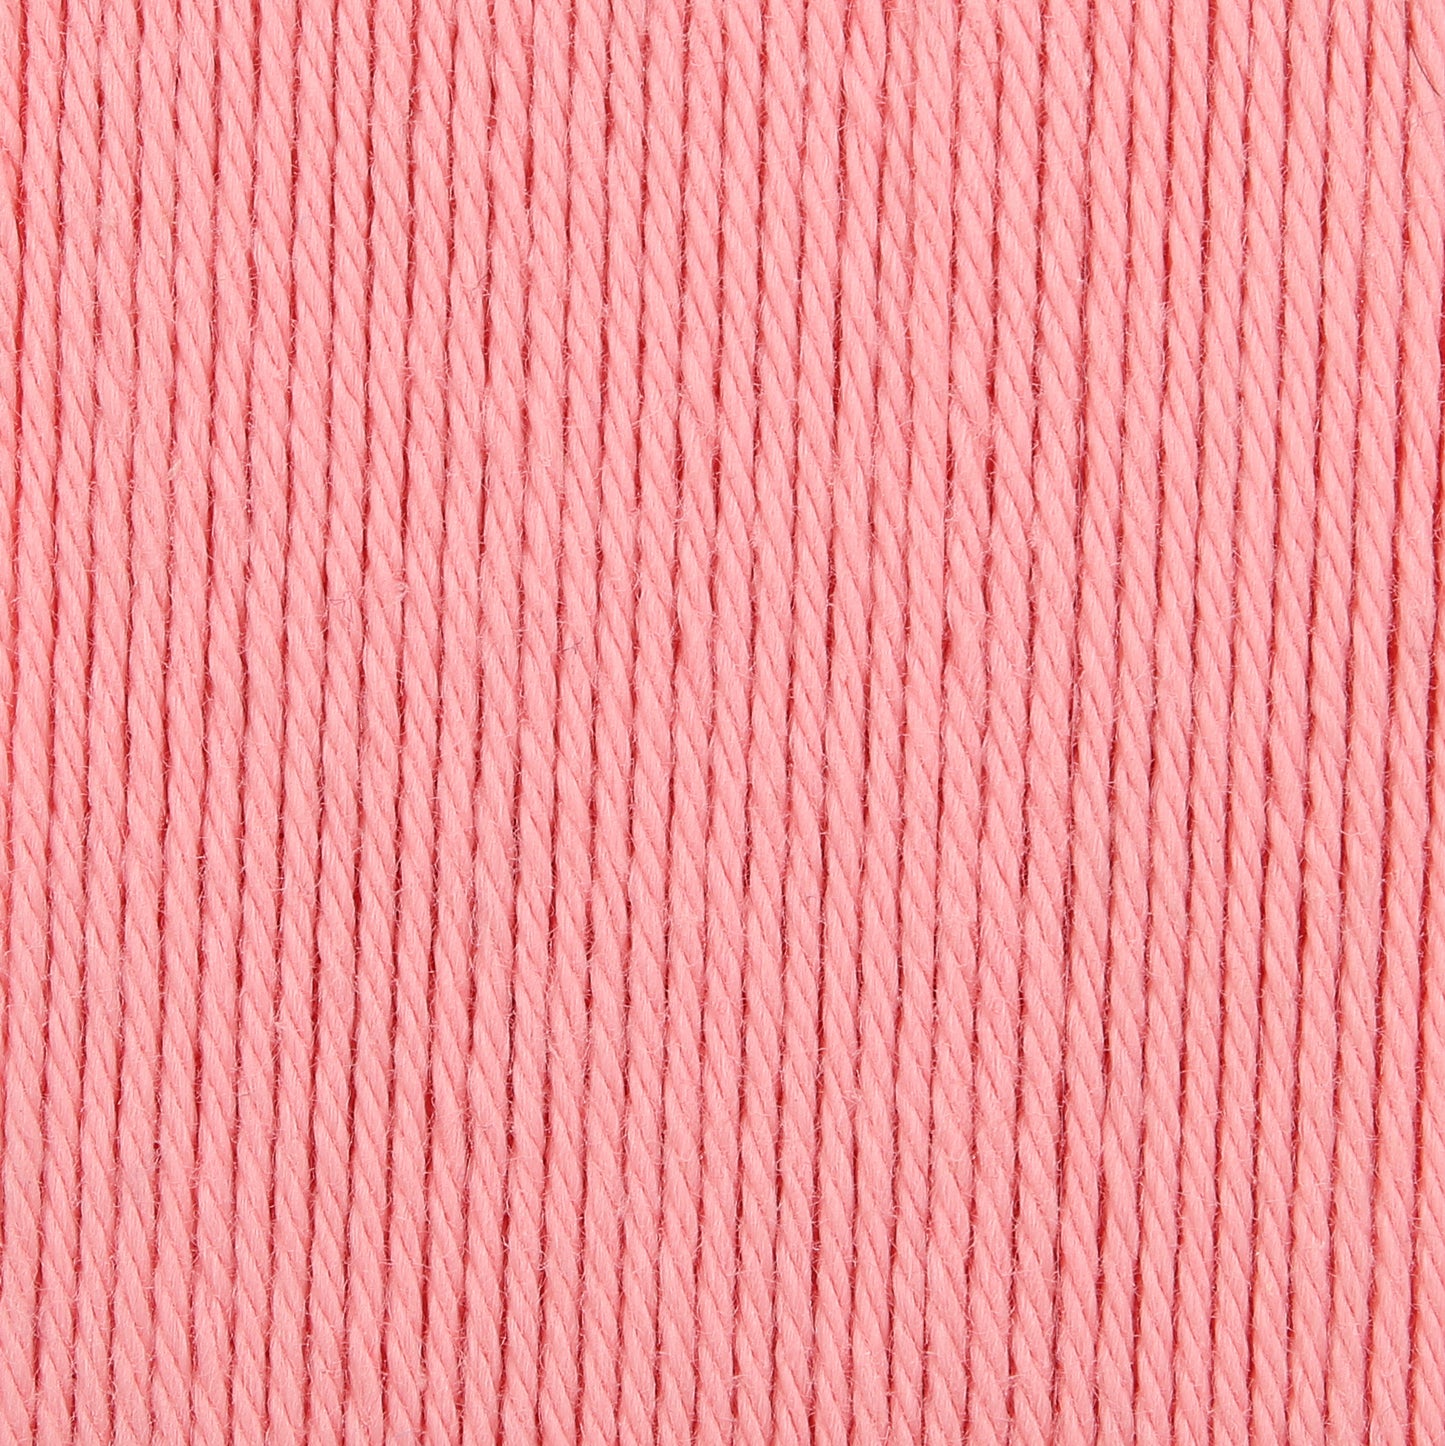 Anchor - Organic Cotton - 50g Ball - Flamingo Pink